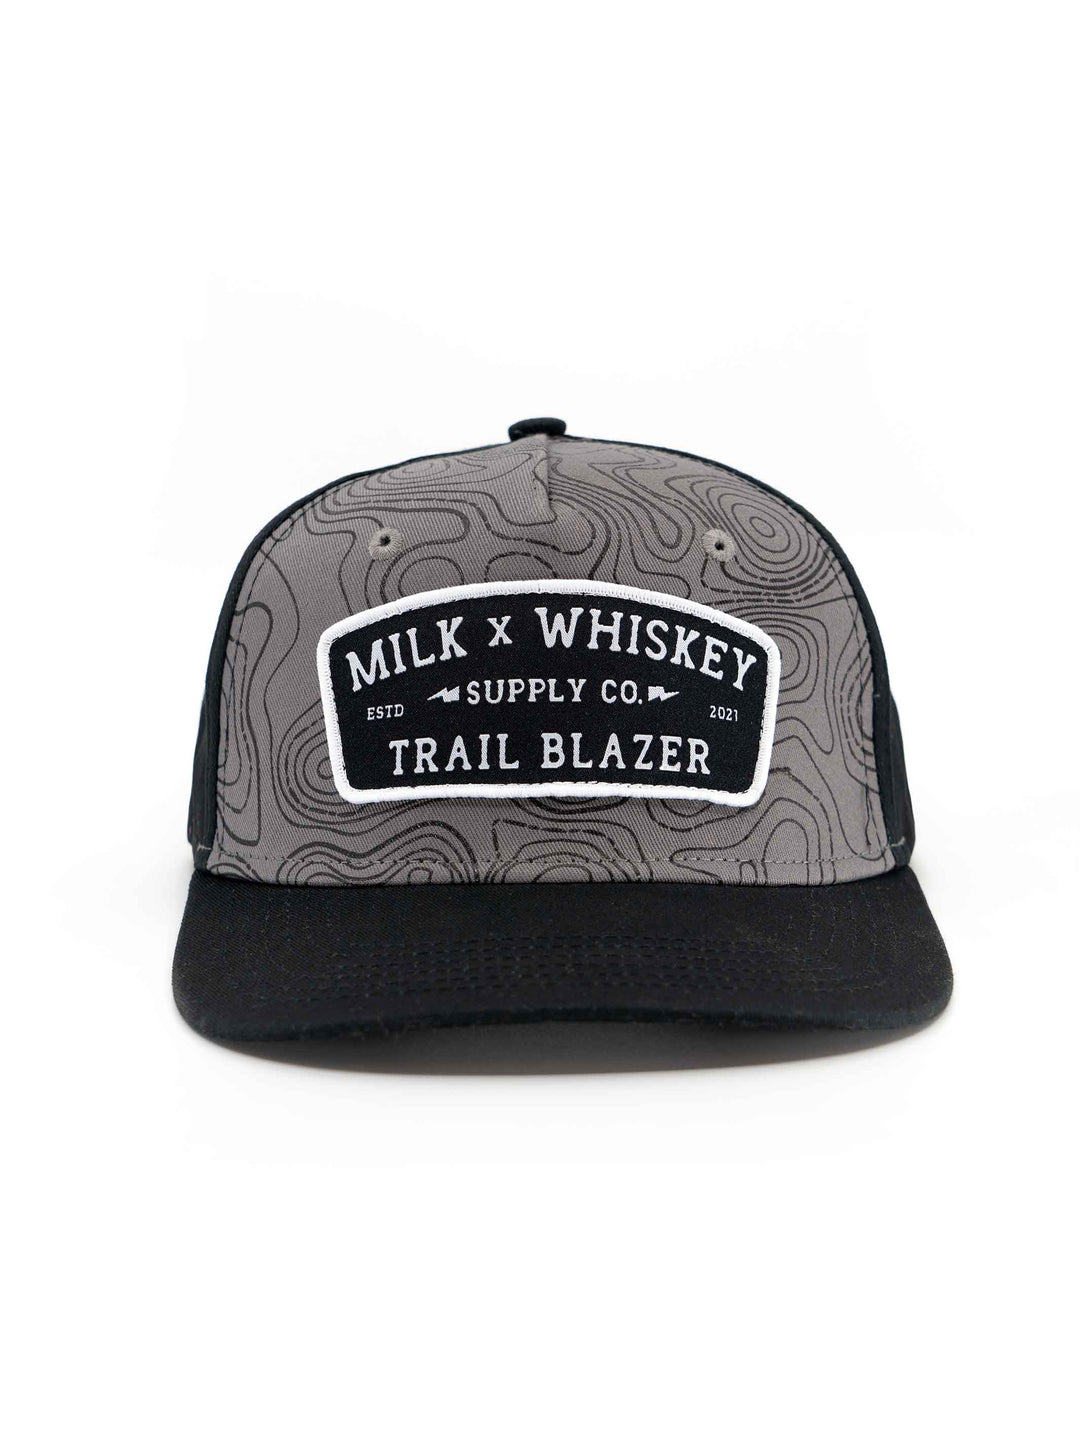 Milk X Whiskey - Trailblazer Topo Flat Brim Hat